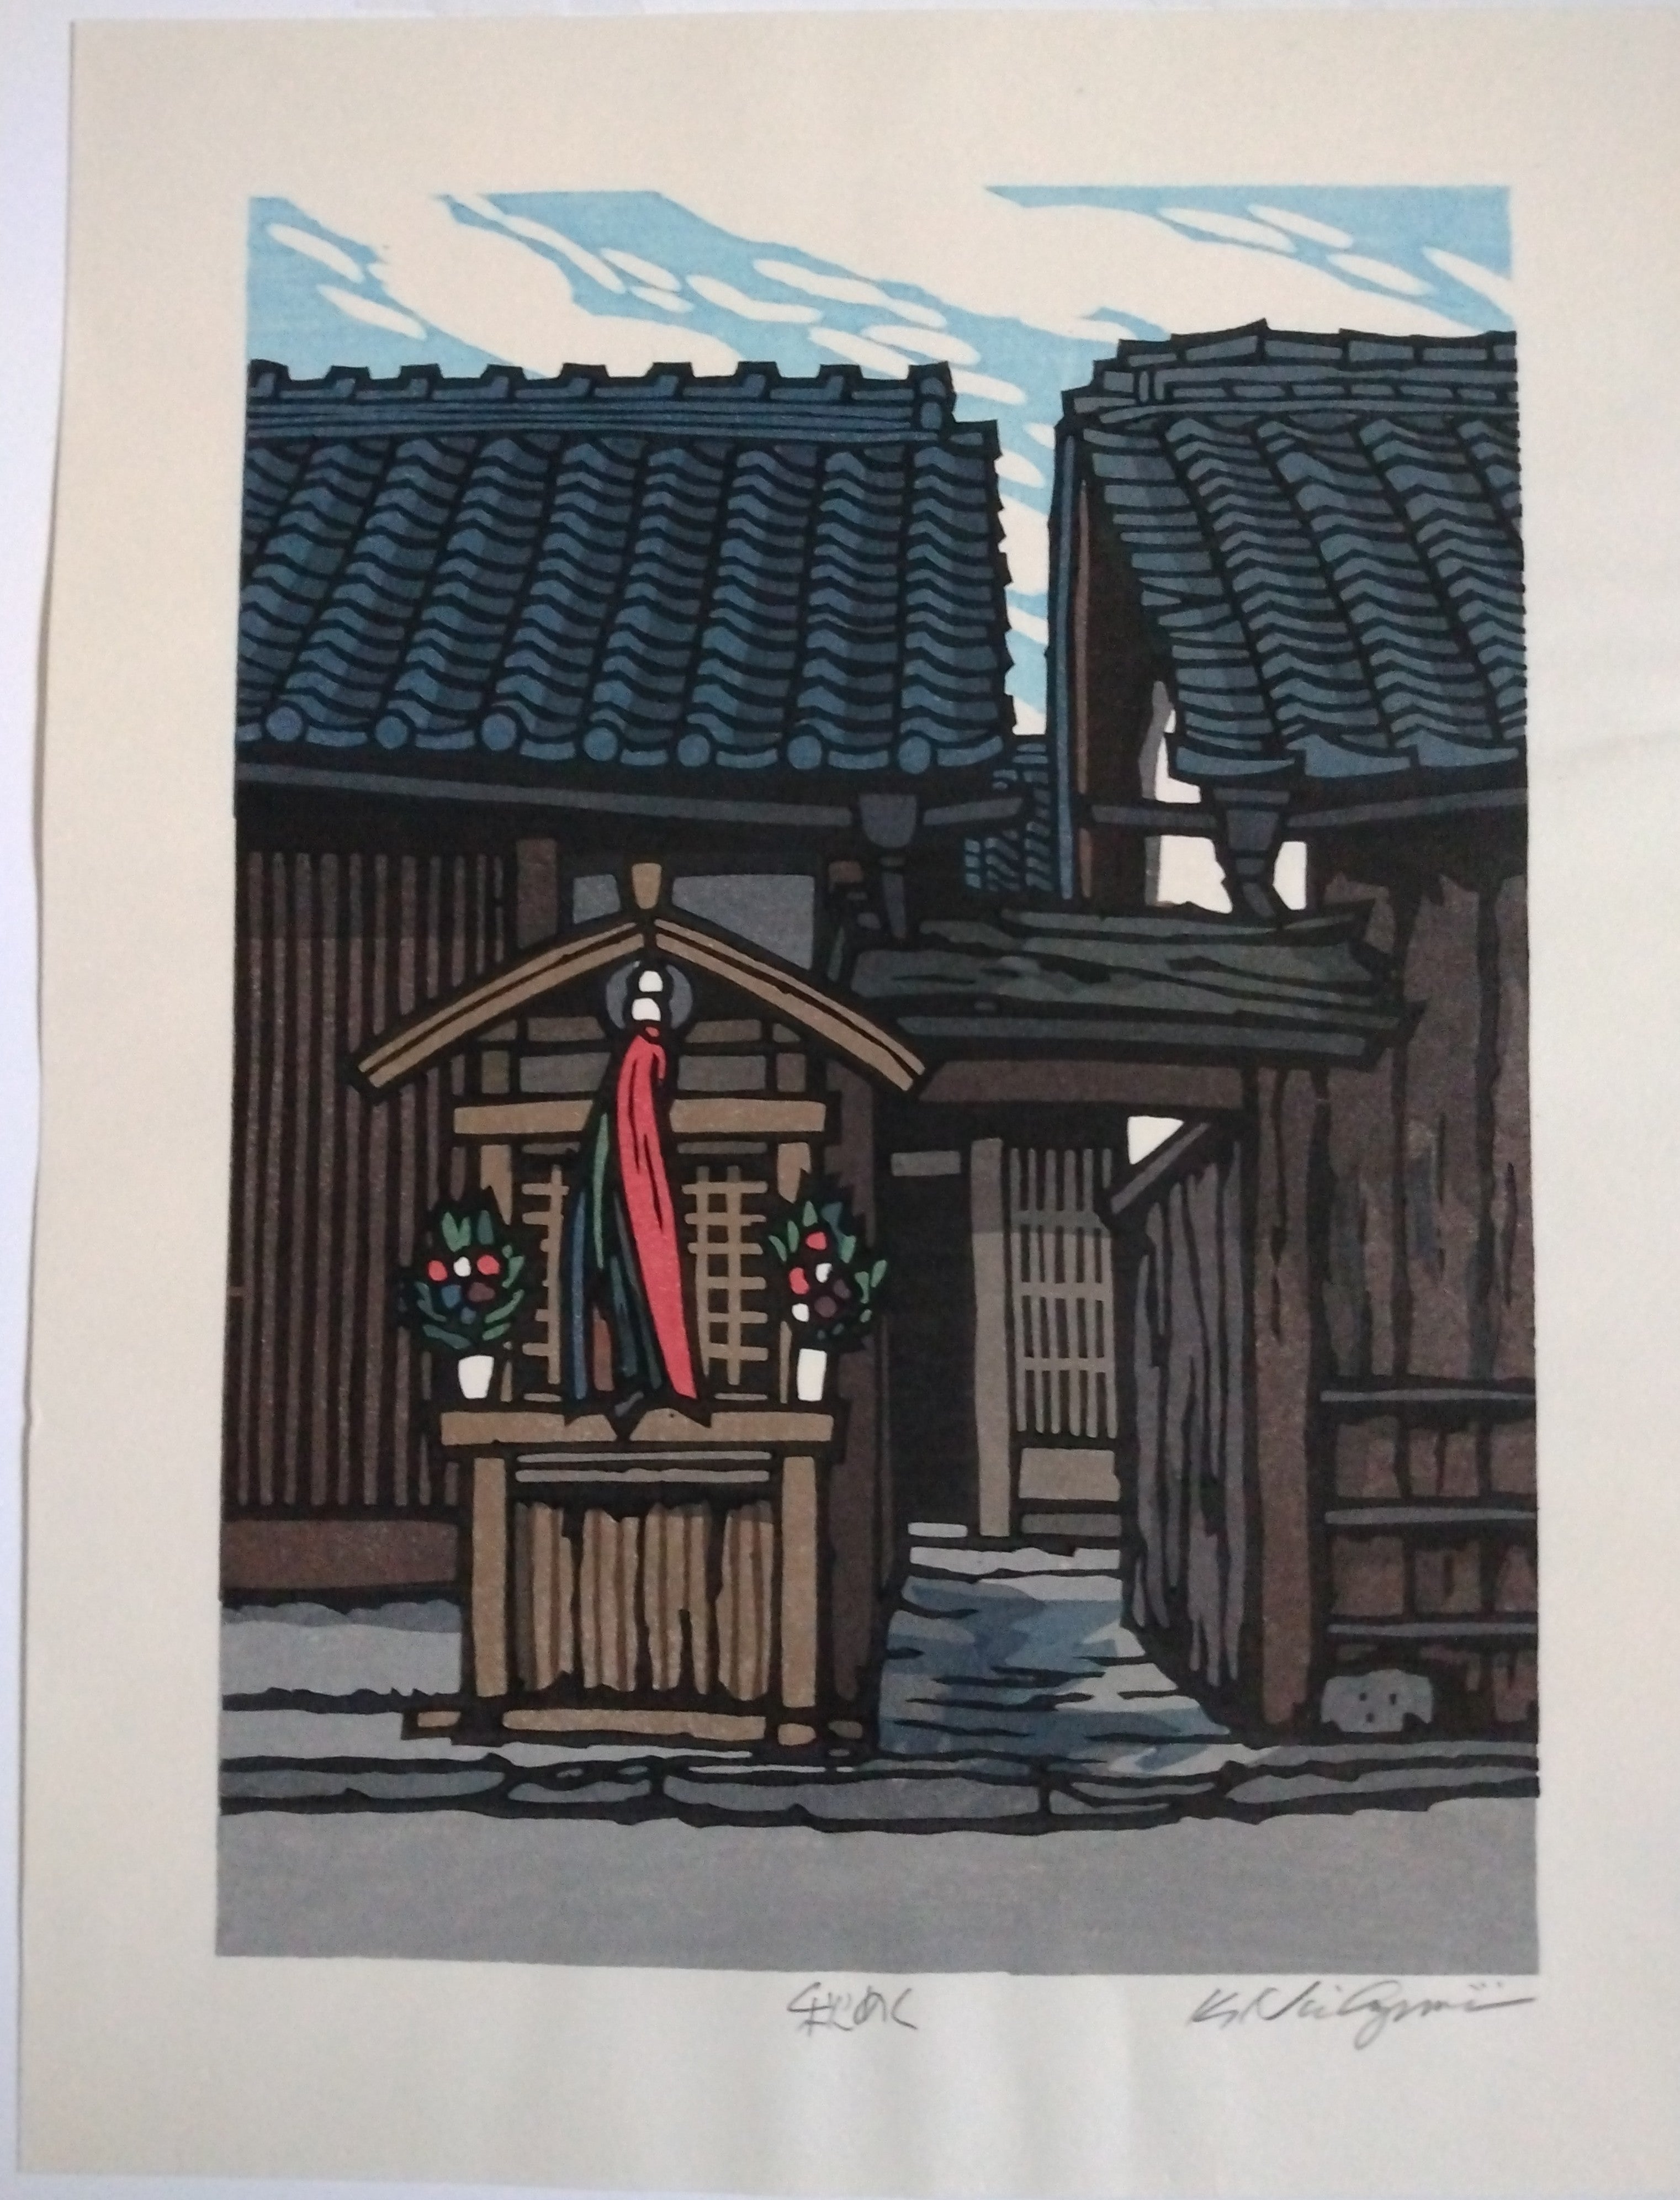 Woodblock Print by Katsuyuki Nishijima, "Becoming Autumn" (Aki Meku)